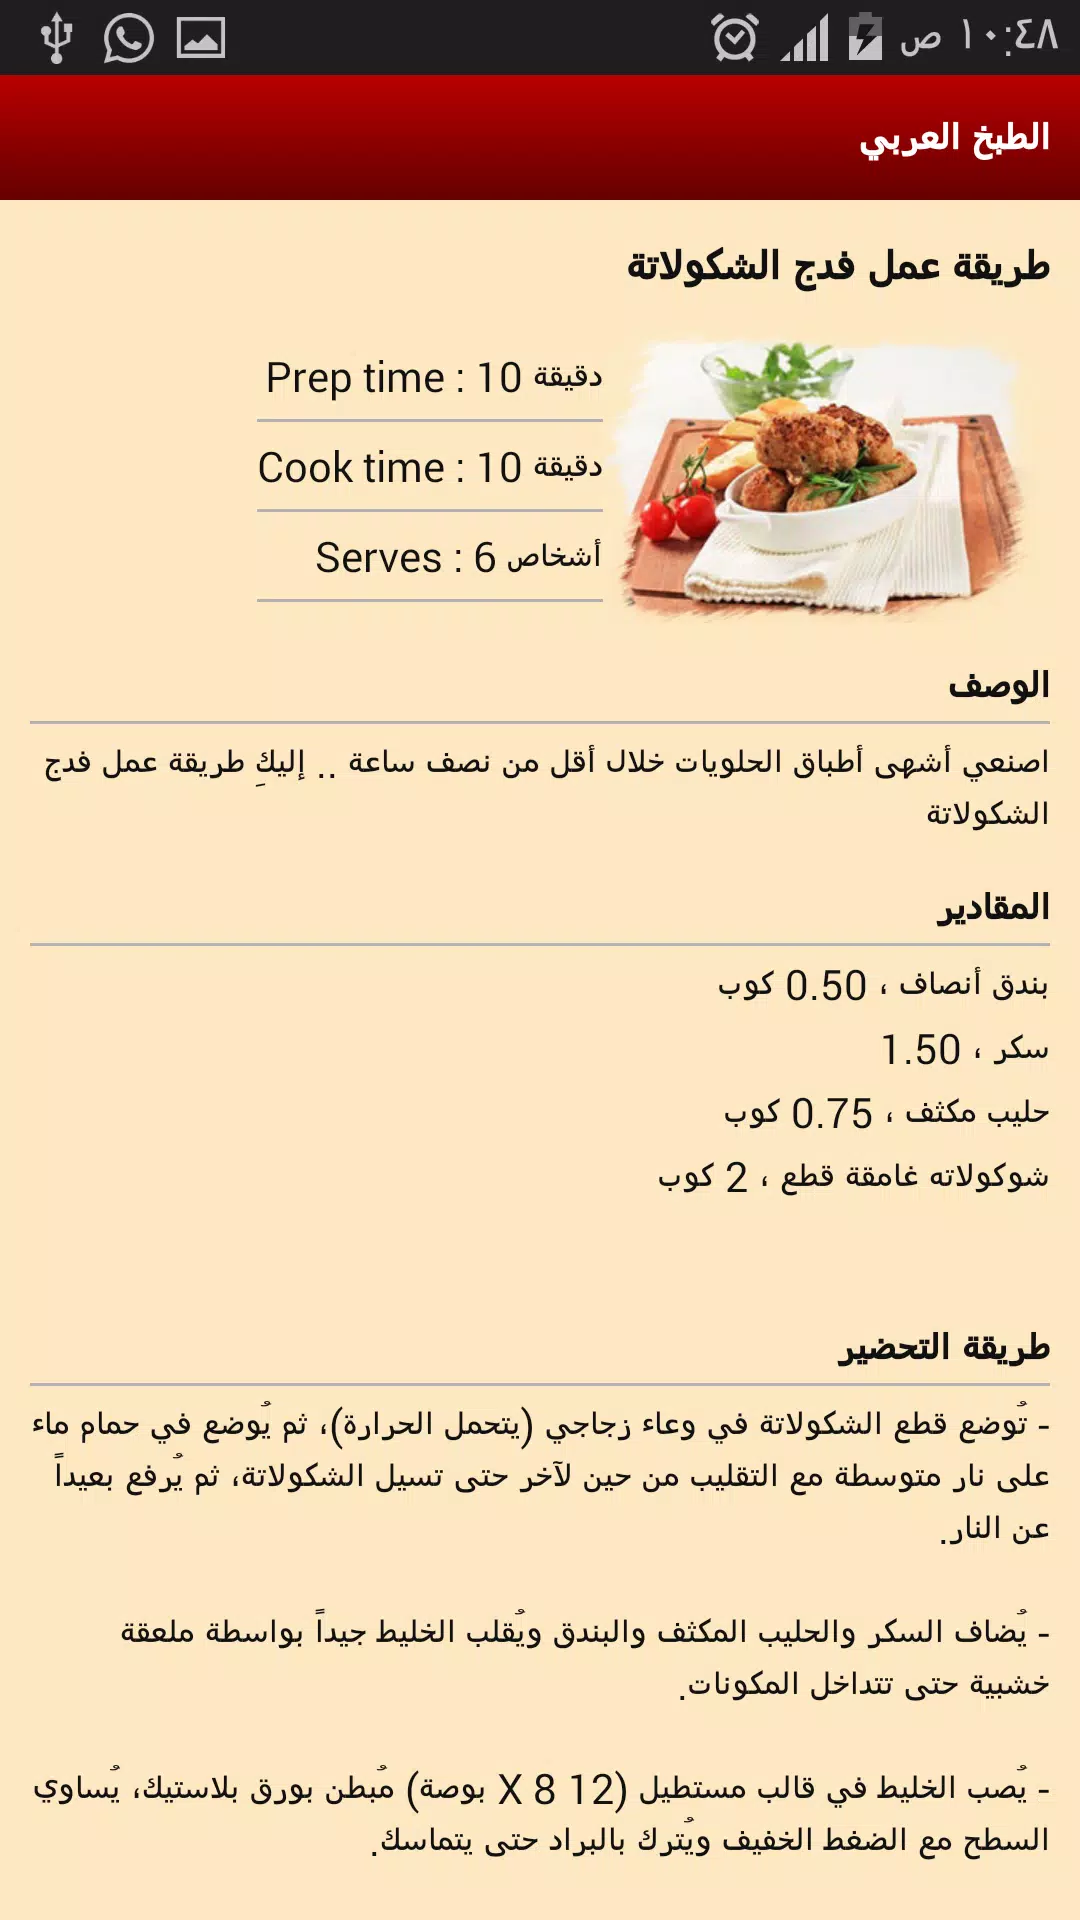 الطبخ العربي الصحي - bookCook APK for Android Download